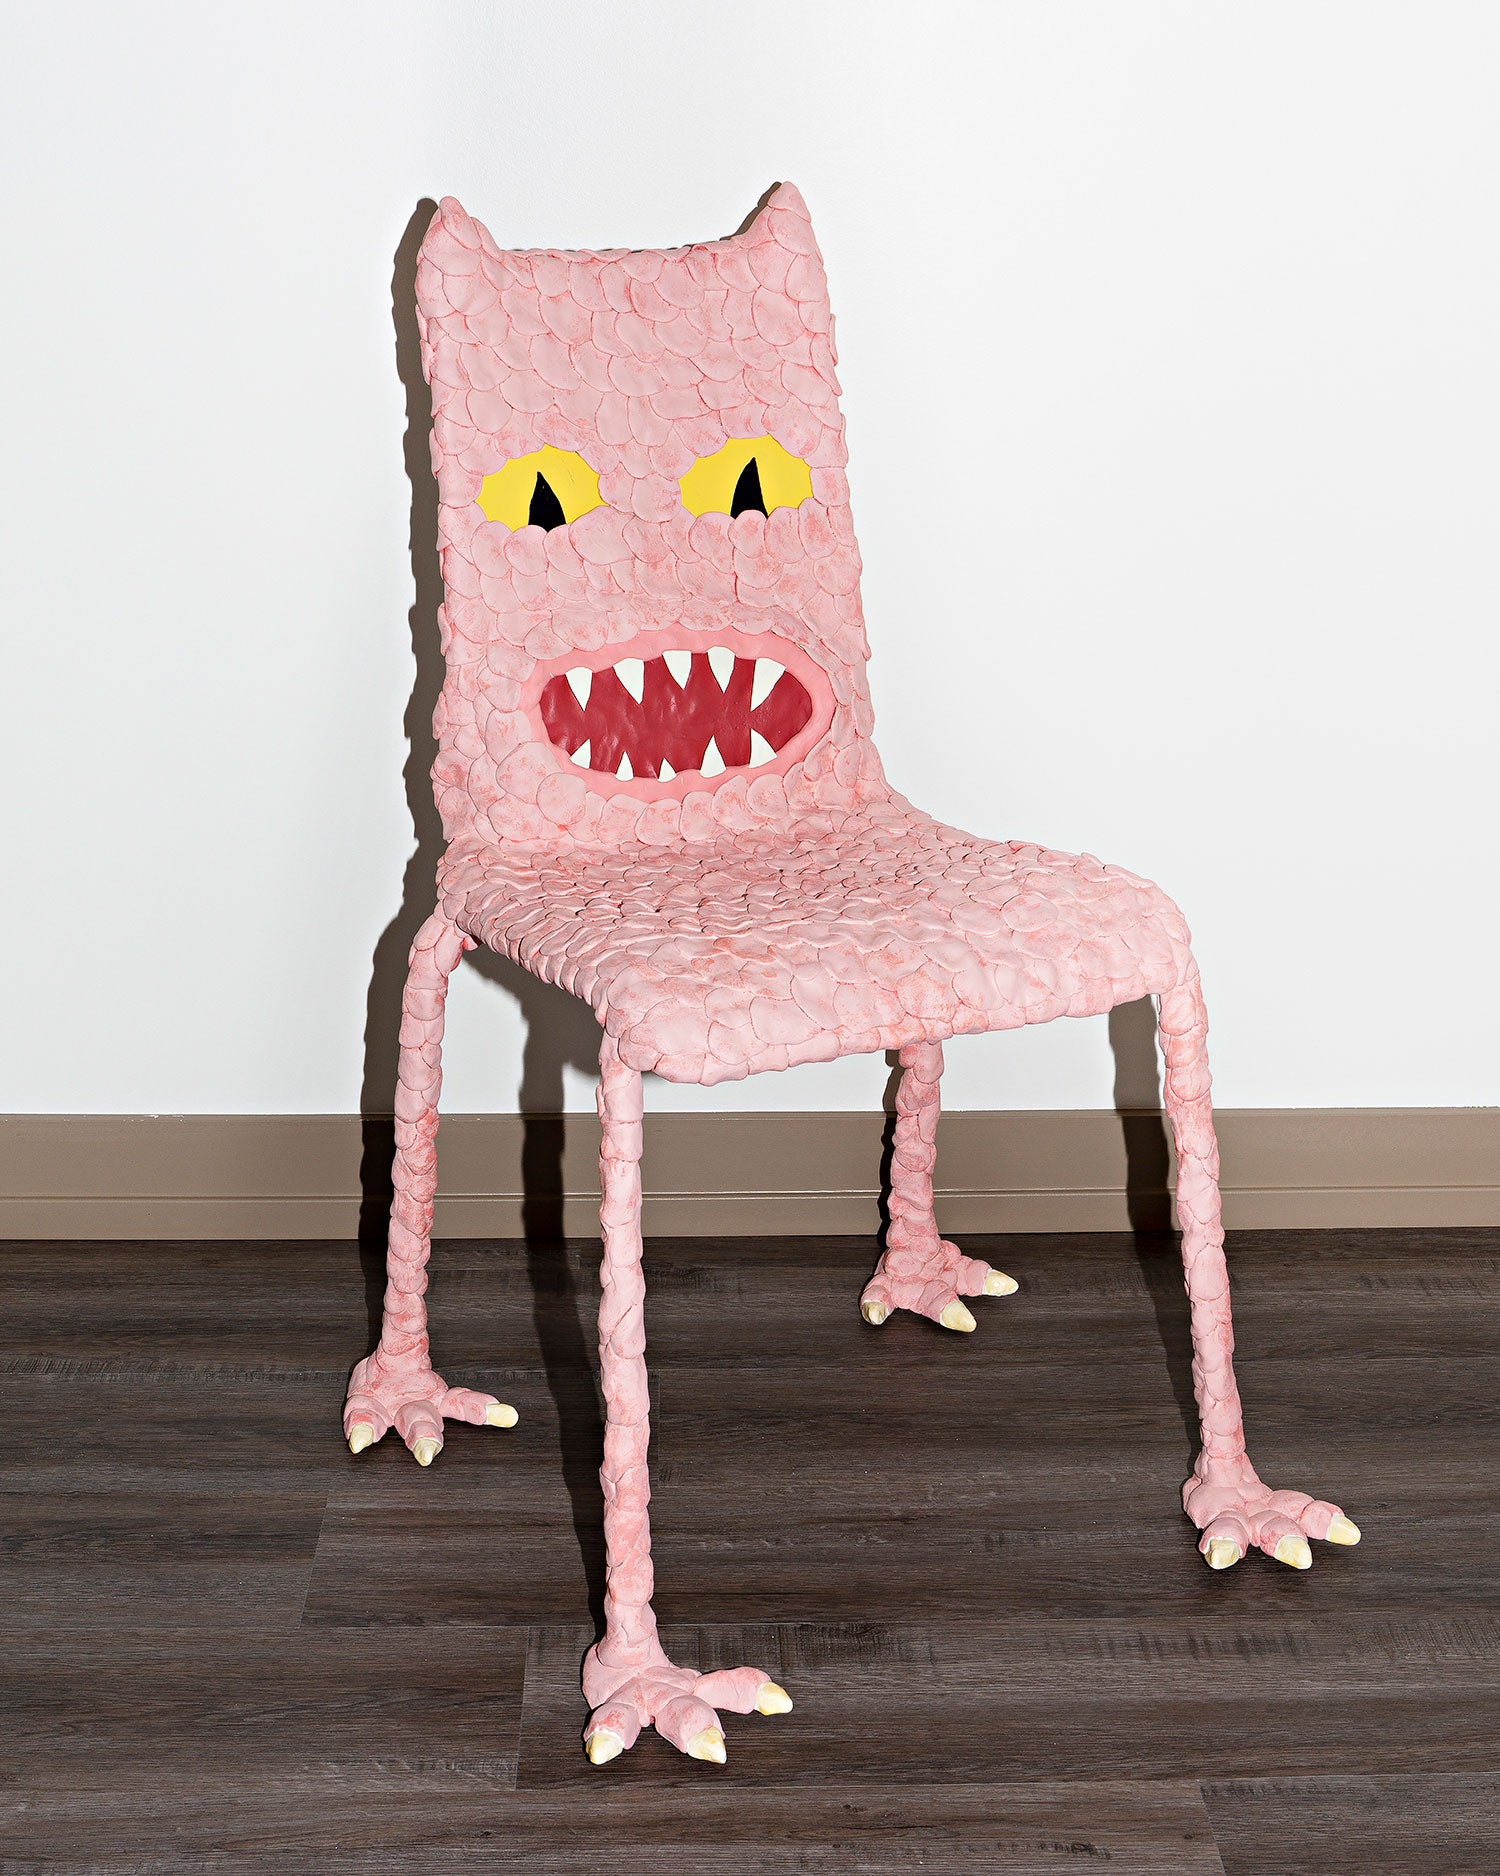 Jacob Haupt, "Demon Chair"